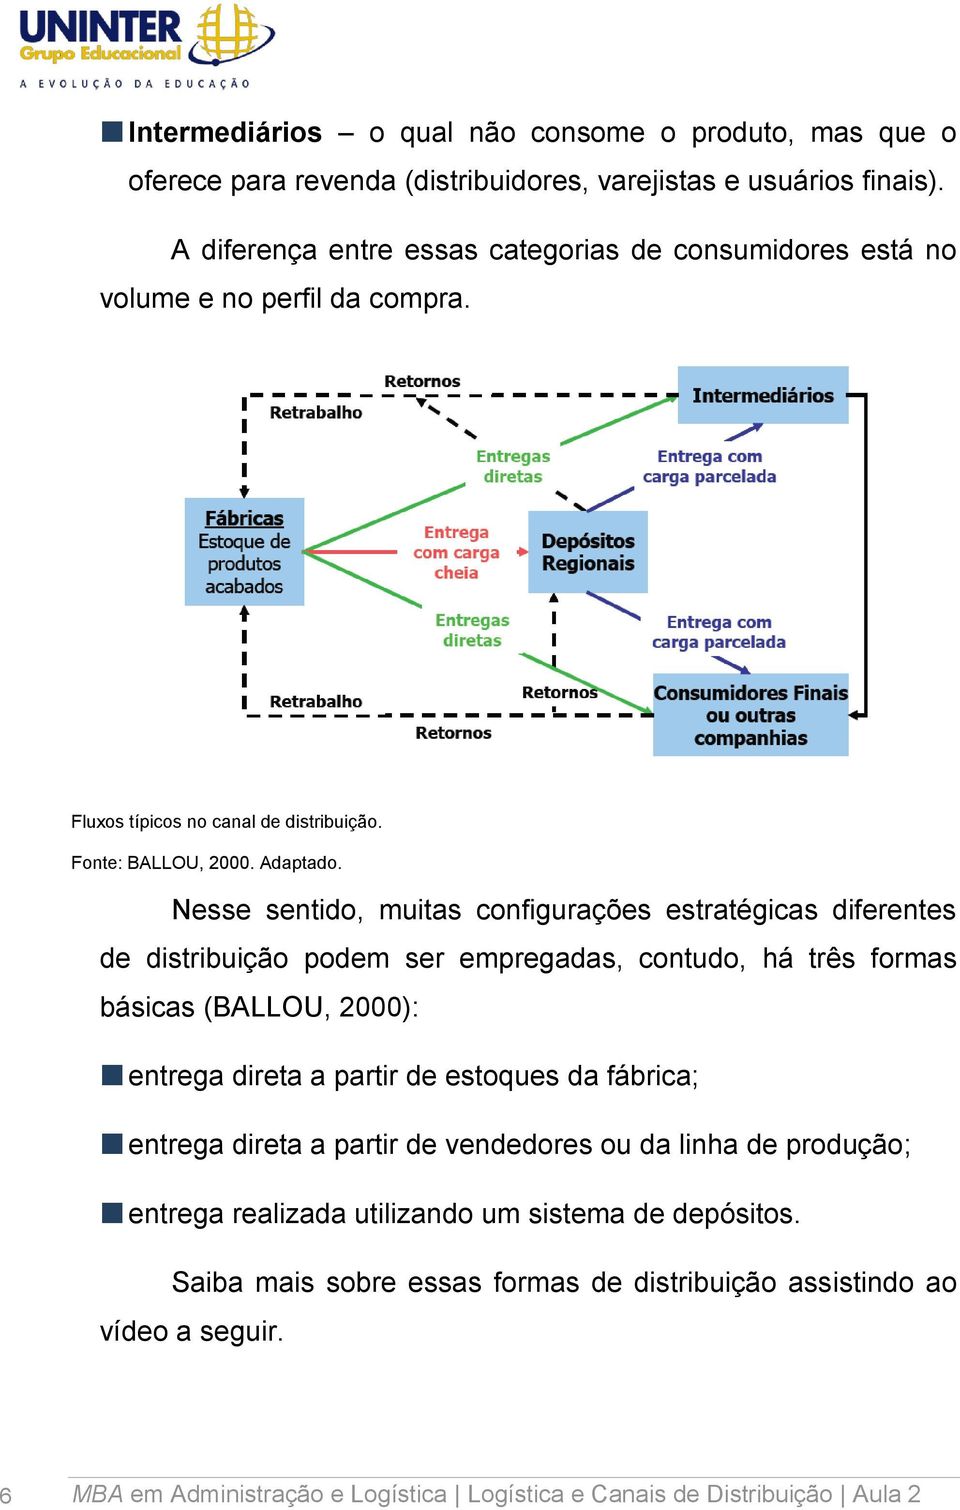 Nesse sentido, muitas configurações estratégicas diferentes de distribuição podem ser empregadas, contudo, há três formas básicas (BALLOU, 2000): entrega direta a partir de estoques da